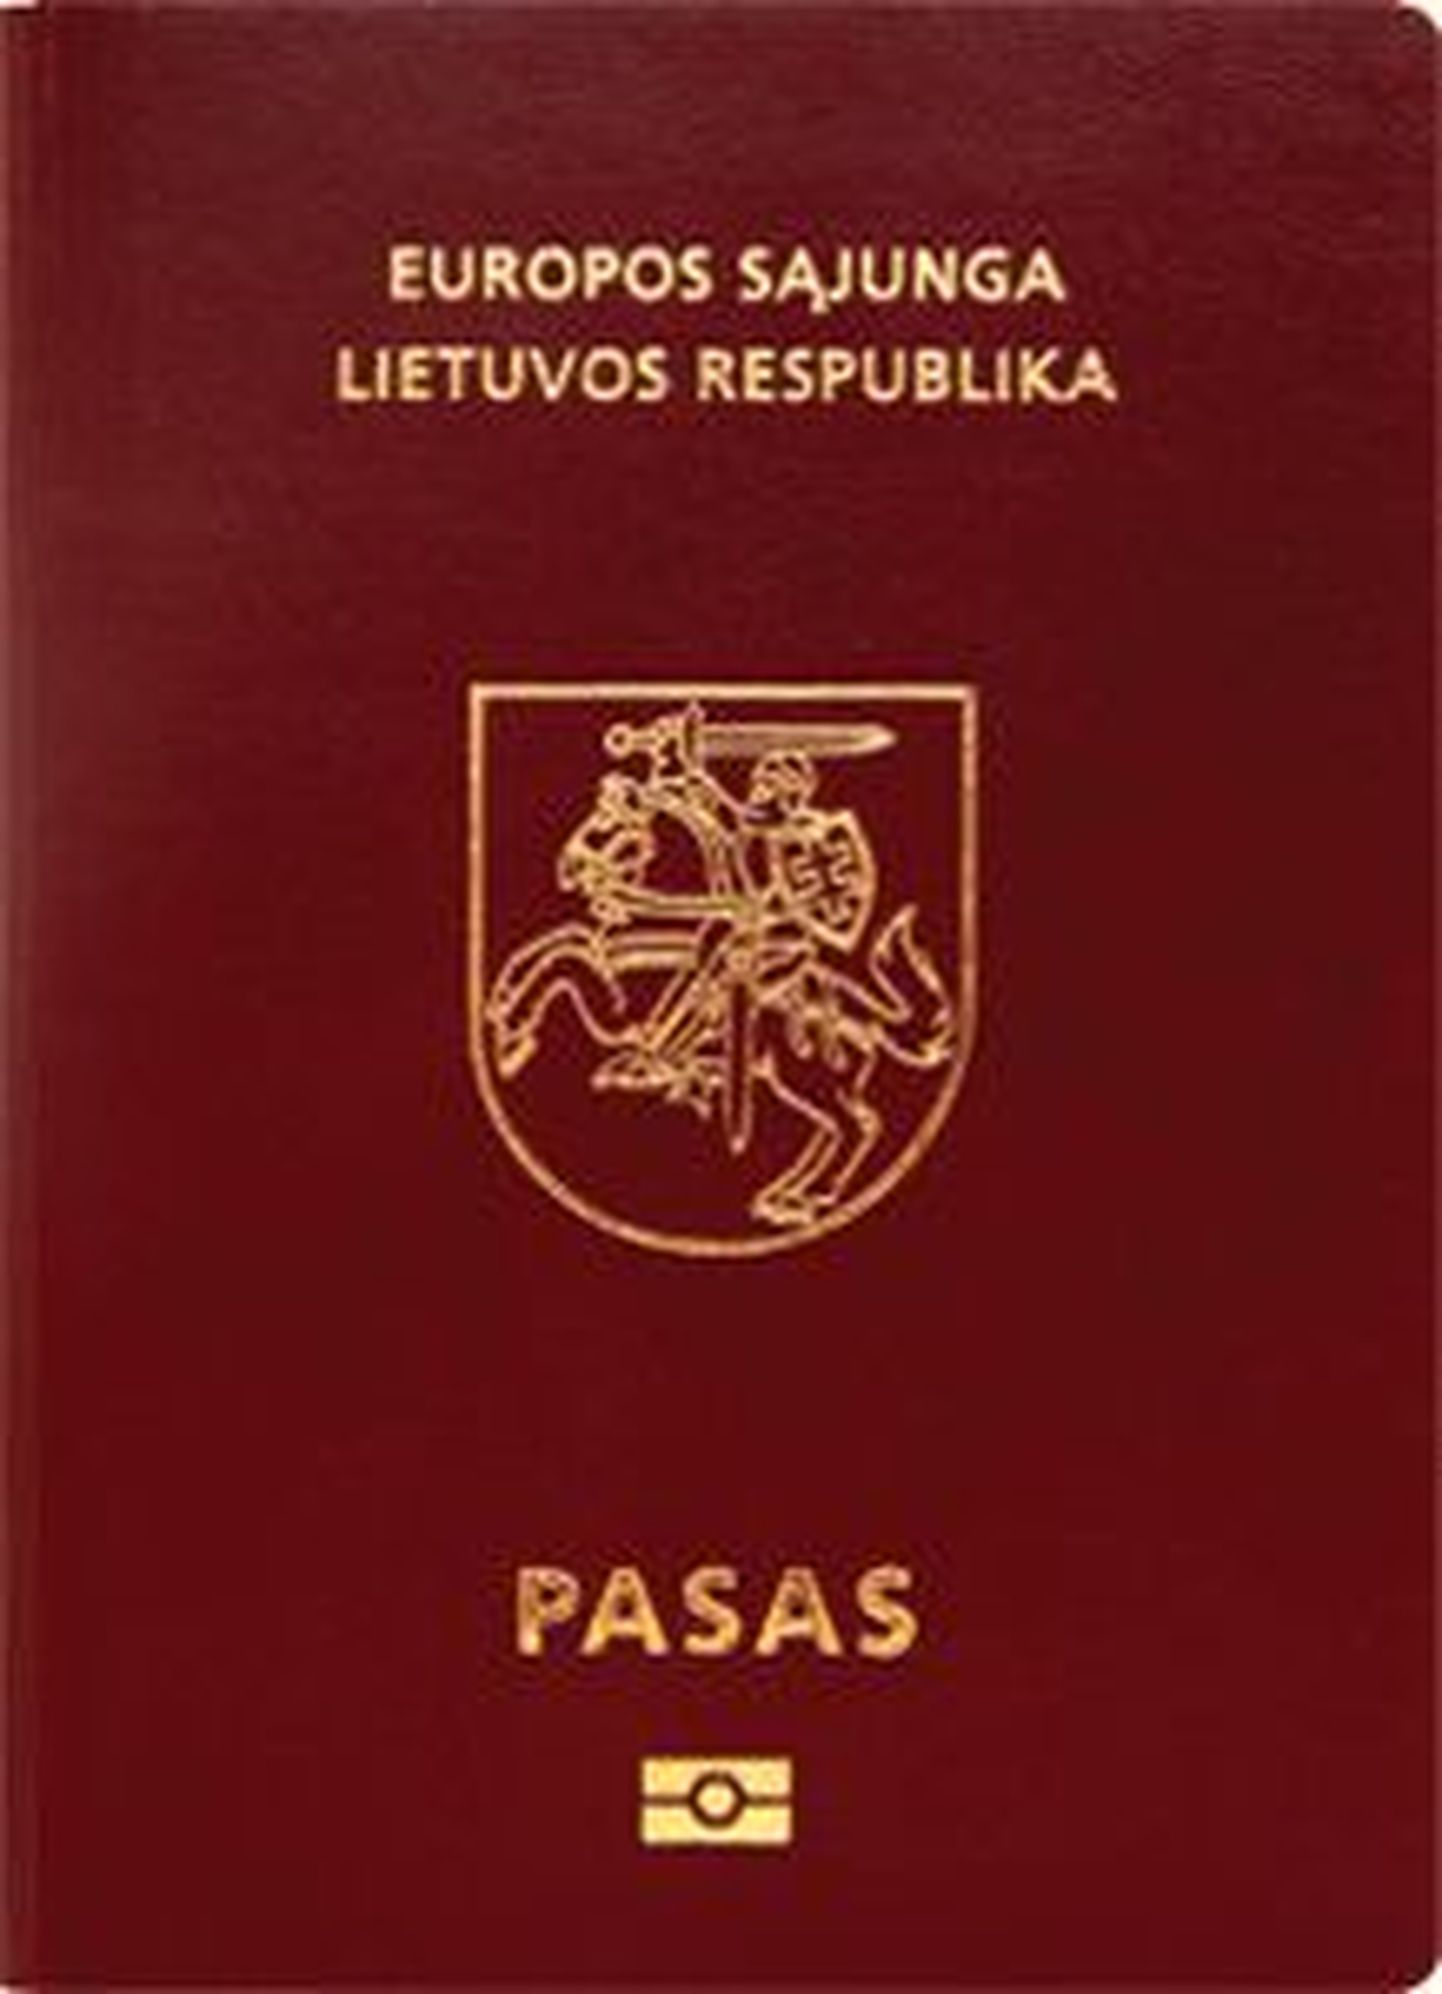 Leedu pass.